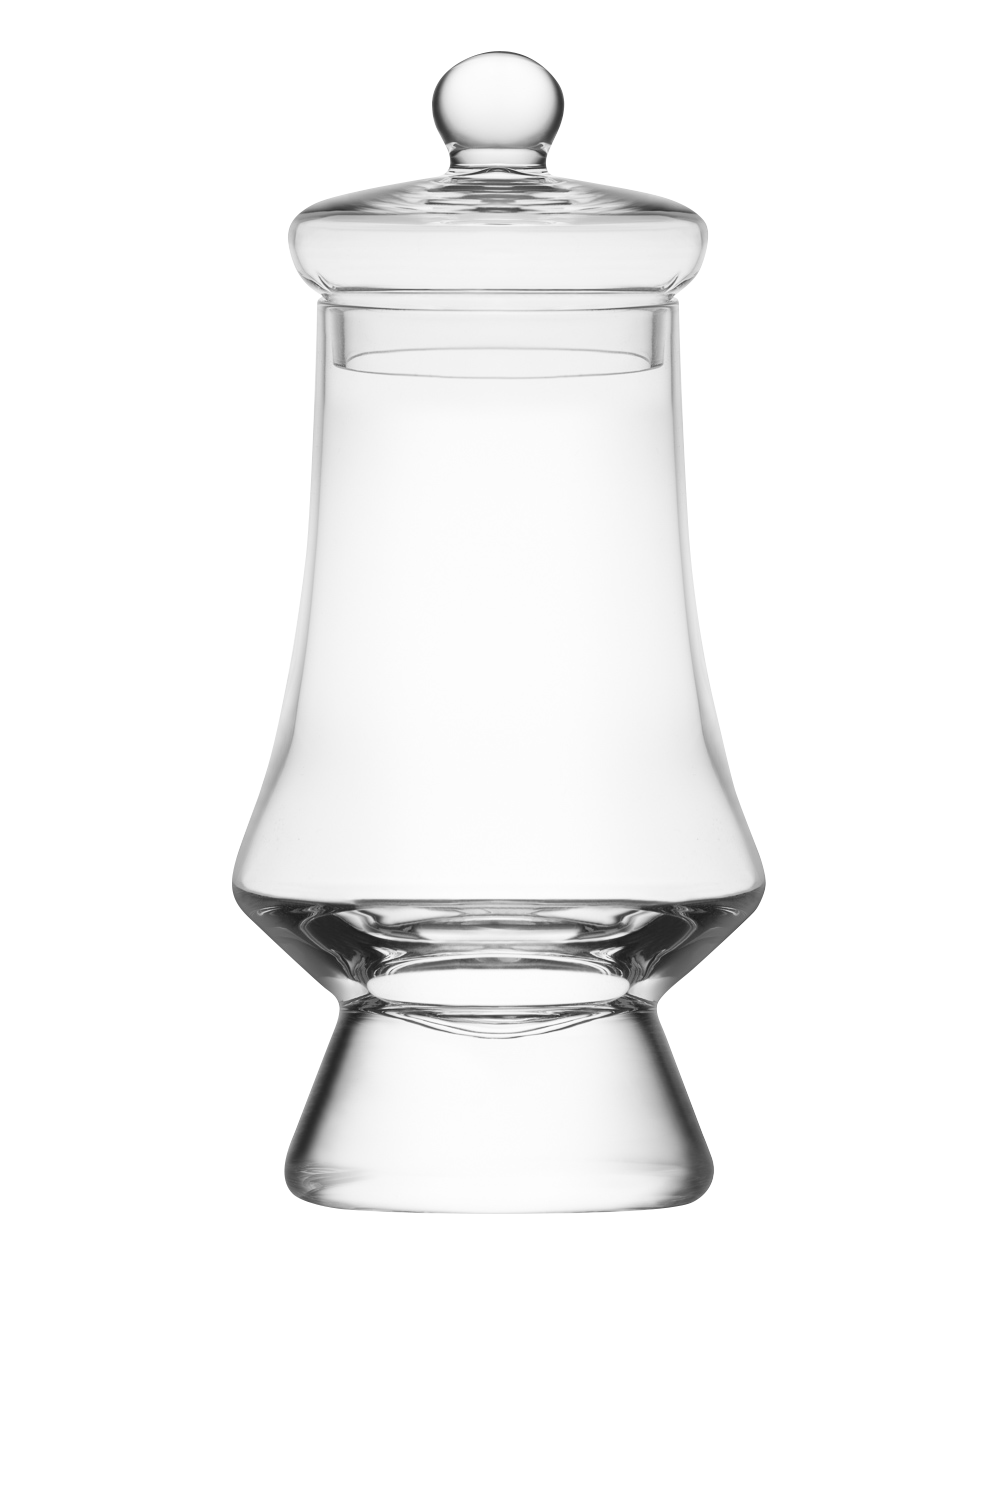 Kieliszek do degustacji whisky g500 marki Amber Glass